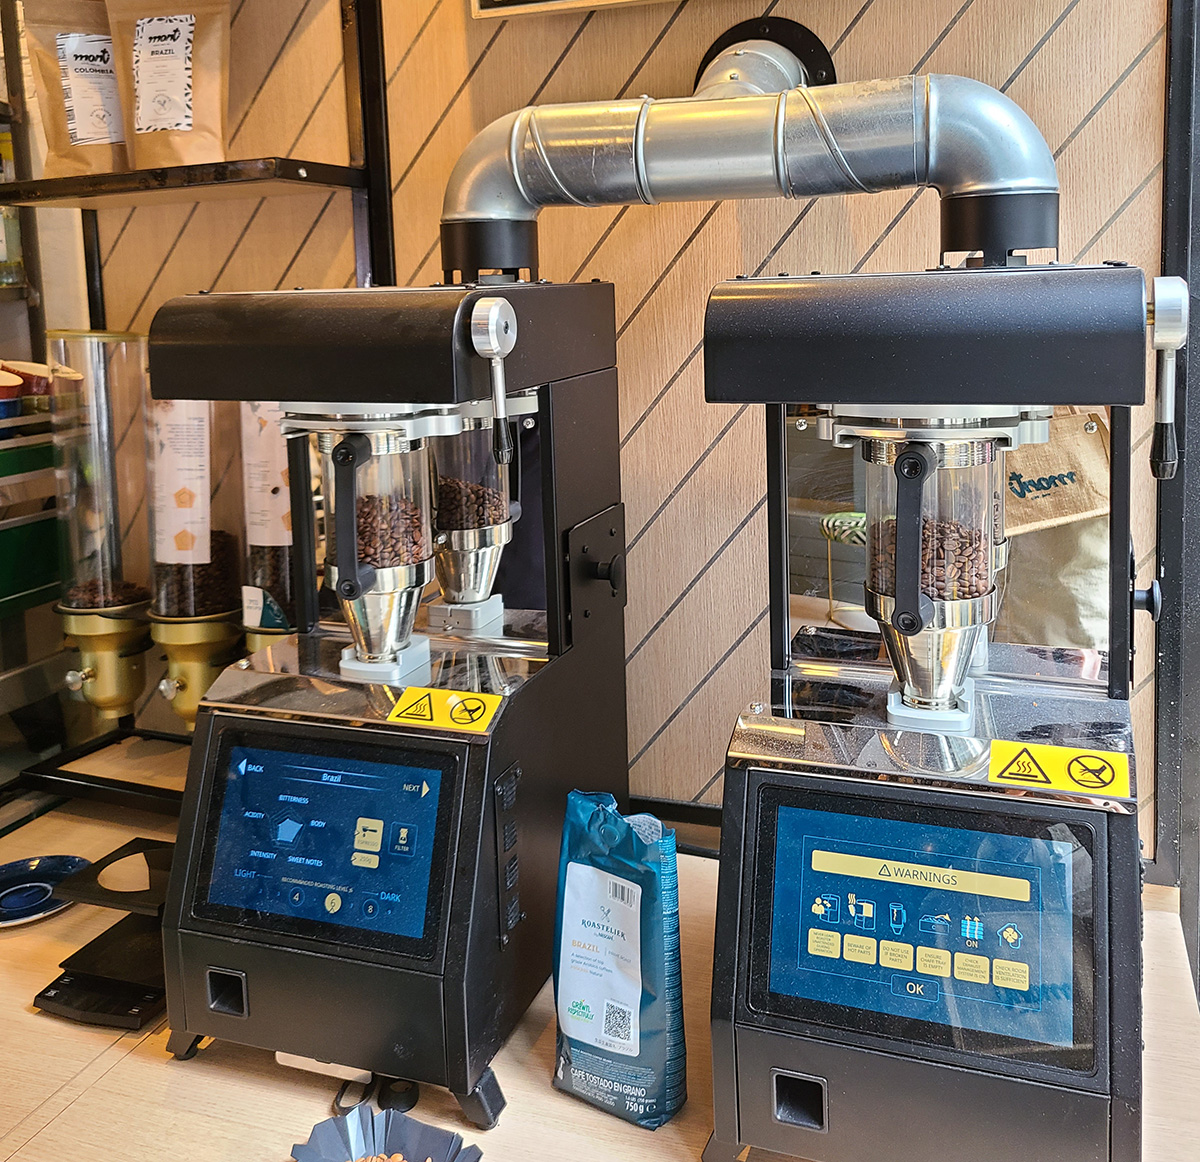 שתי מכונות קלייה Roastelier של נסטלה בבית הקפה מונטי בתל אביב. צילום: מגזין שותים